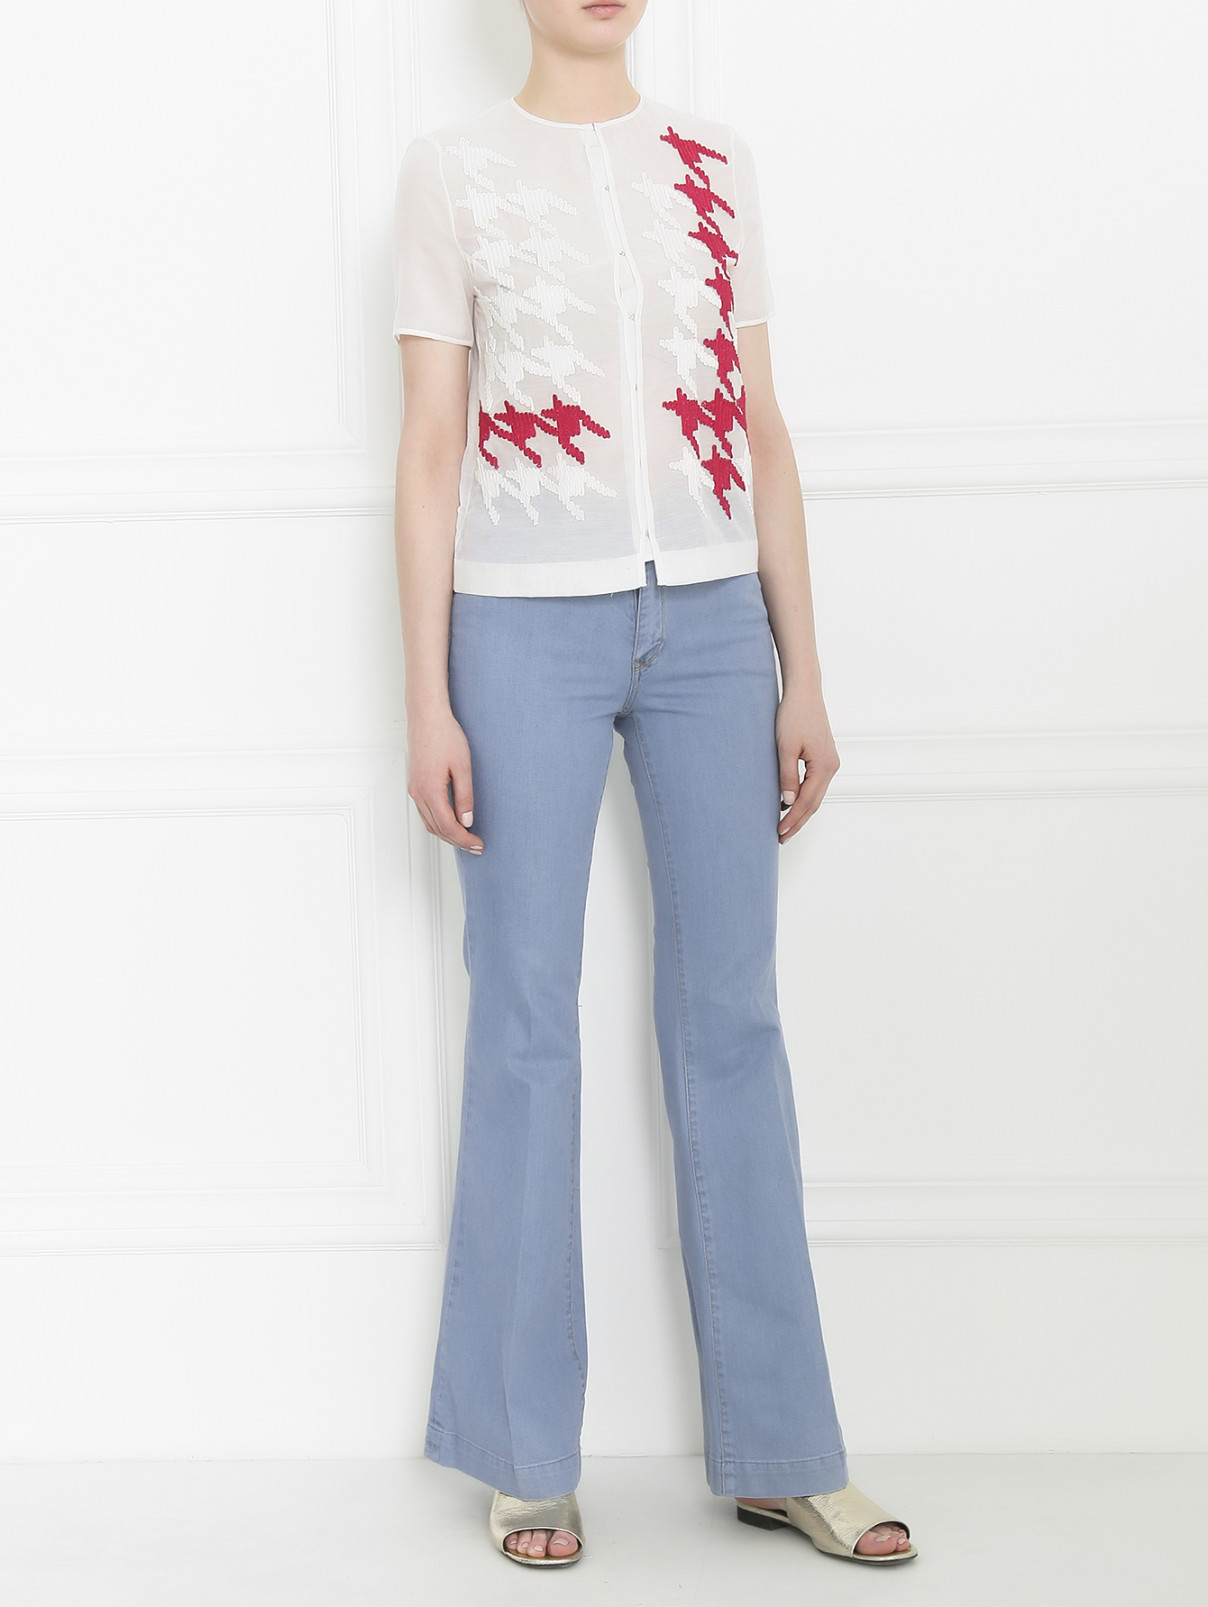 Блуза из хлопка и шелка с аппликацией Paul Smith  –  Модель Общий вид  – Цвет:  Белый